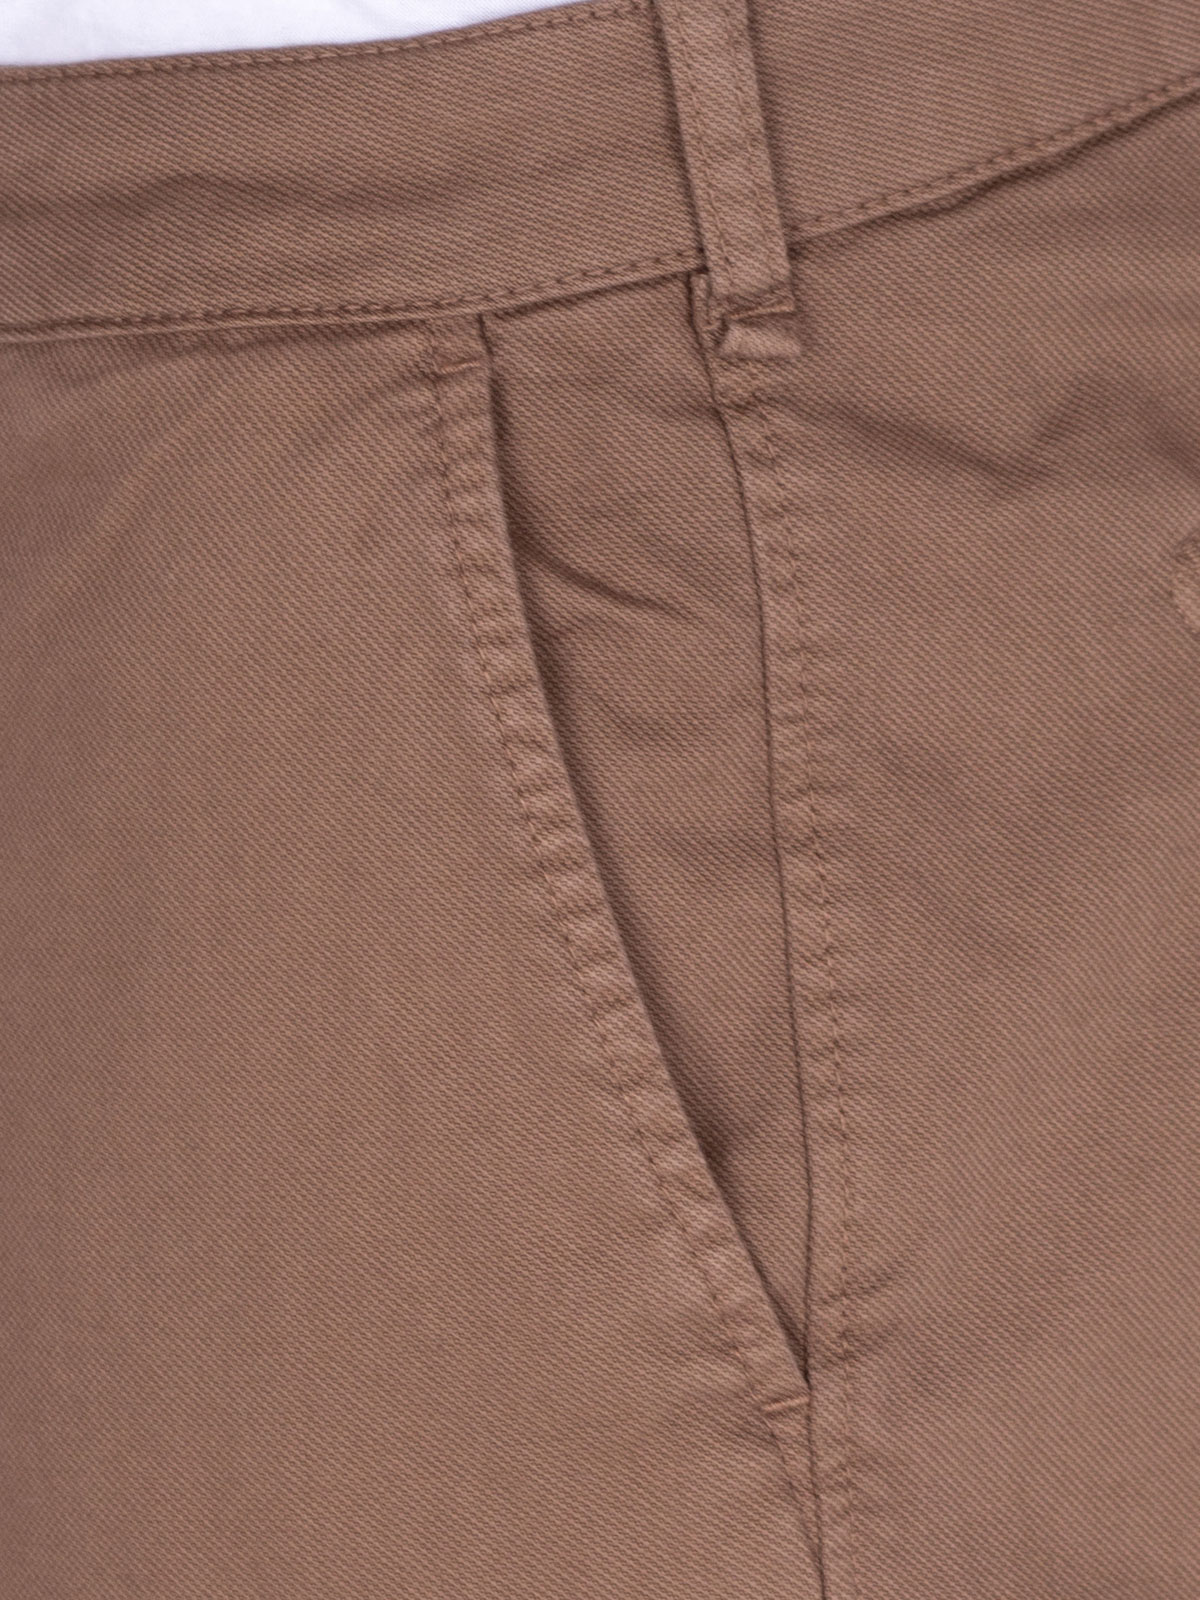 Pantaloni cropți în culoarea cămilului - 60279 € 49.49 img2